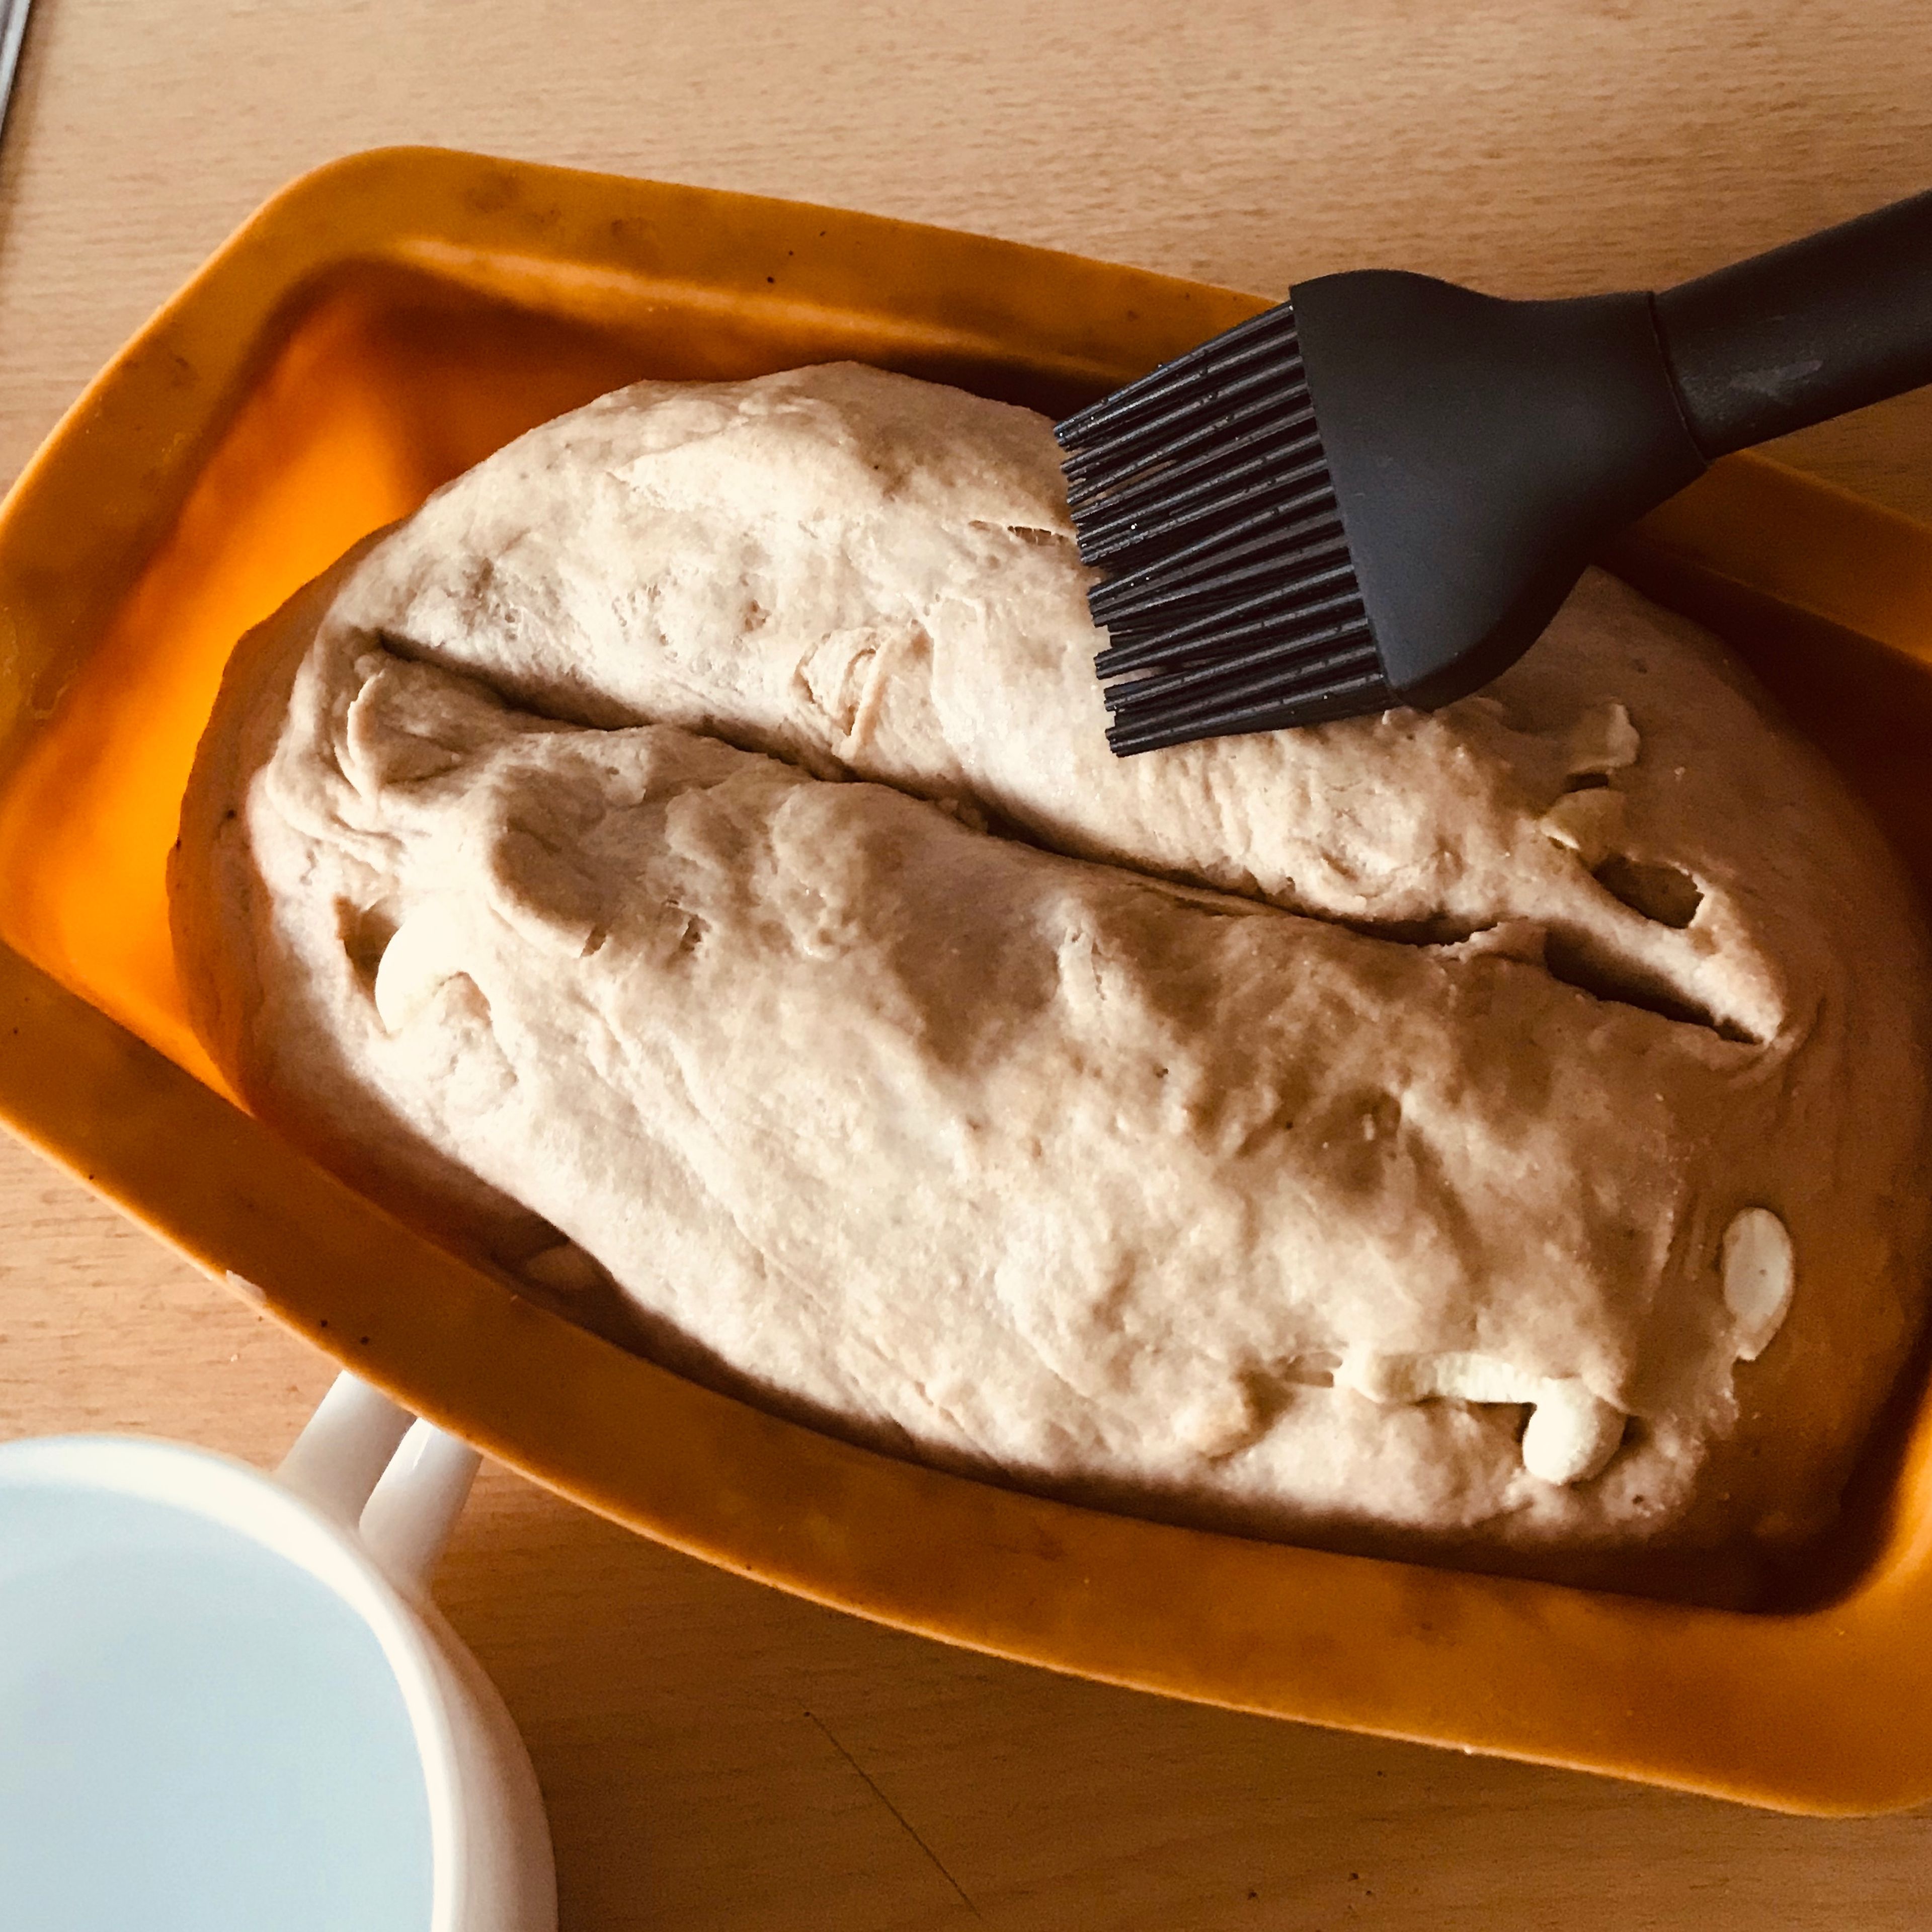 Den Teig in eine Kastenform geben und mit einem Messer längs ca. 1cm tief einschneiden. Anschließend mit Wasser bestreichen und in den Ofen schieben.